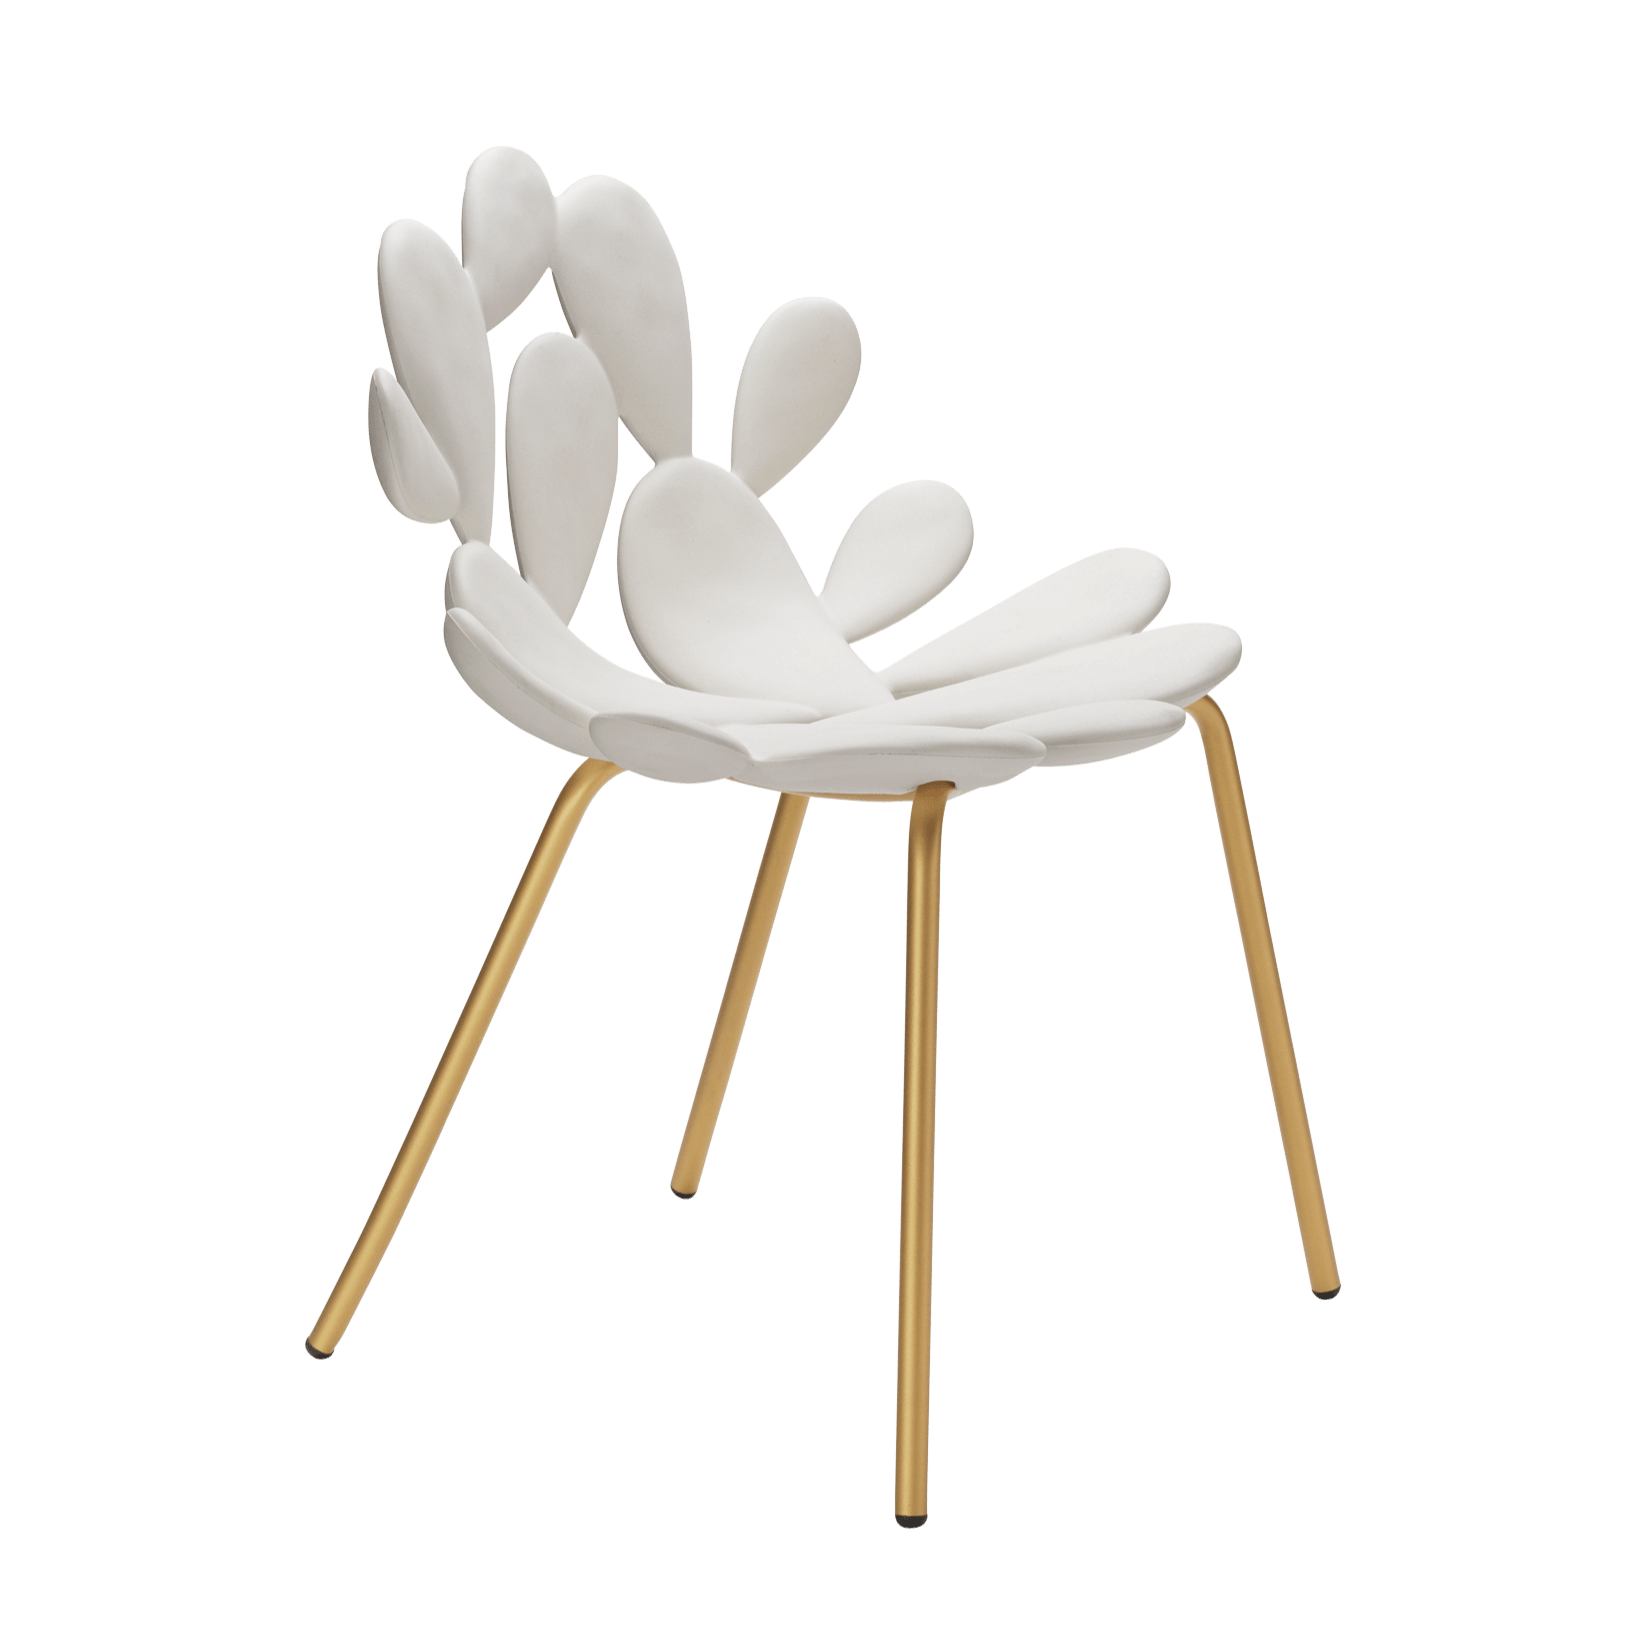 Po sukcesie fotela FILICUDI Maractonio projektuje dla Qeeboo nowy element należący do tej samej rodziny.  Krzesło FILICUDI to nowe krzesło firmy Qeeboo, odpowiednie do wnętrz i na zewnątrz, które może odtworzyć śródziemnomorską magię w naszych codziennych przestrzeniach.